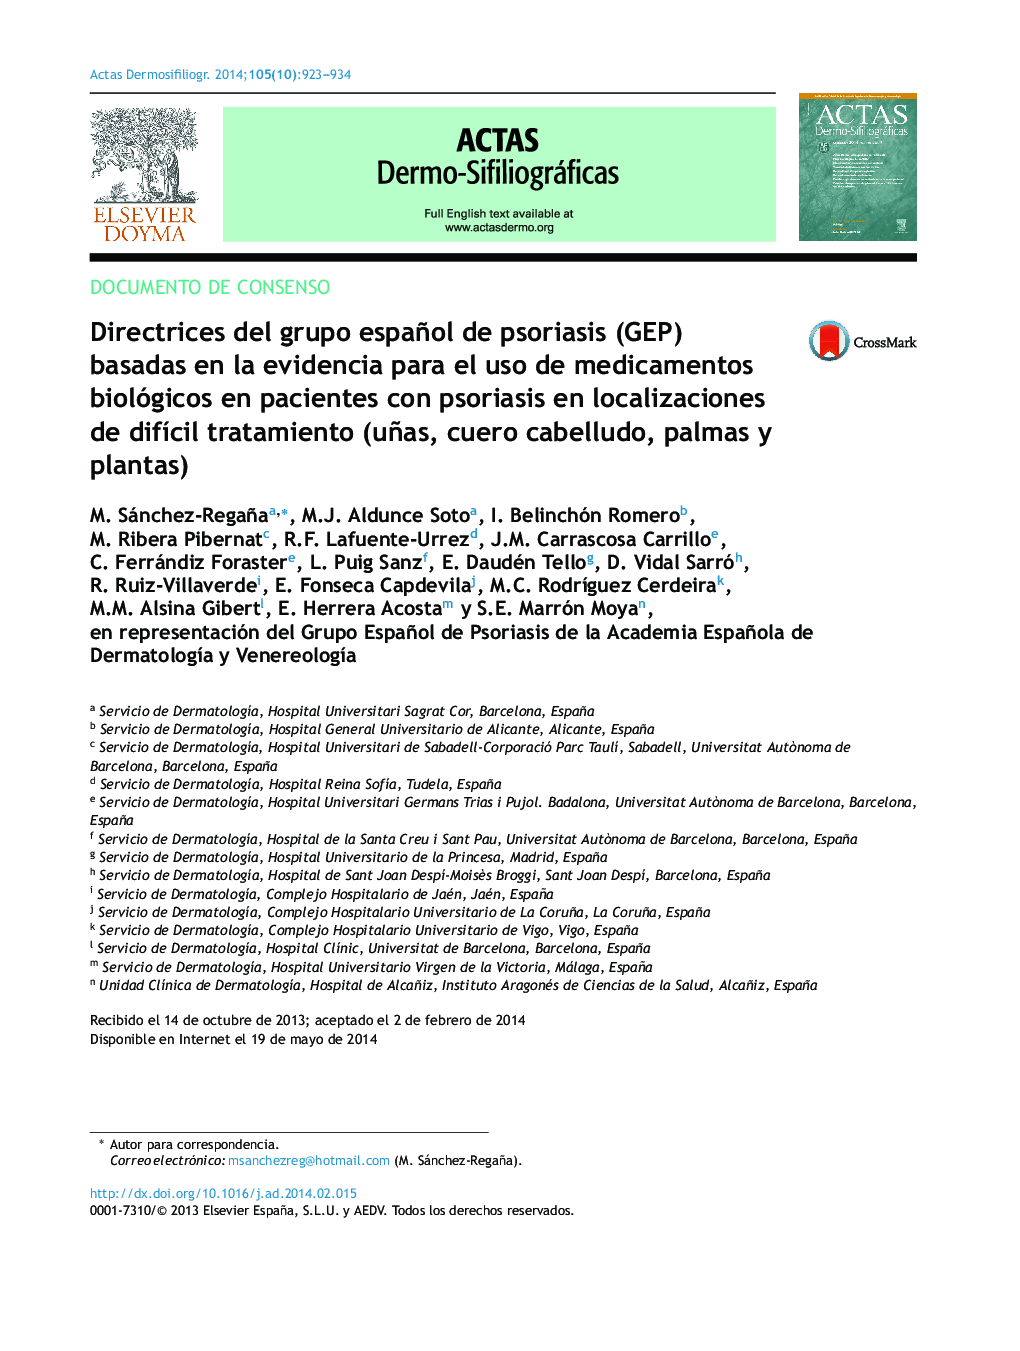 Directrices del grupo español de psoriasis (GEP) basadas en la evidencia para el uso de medicamentos biológicos en pacientes con psoriasis en localizaciones de difÃ­cil tratamiento (uñas, cuero cabelludo, palmas y plantas)